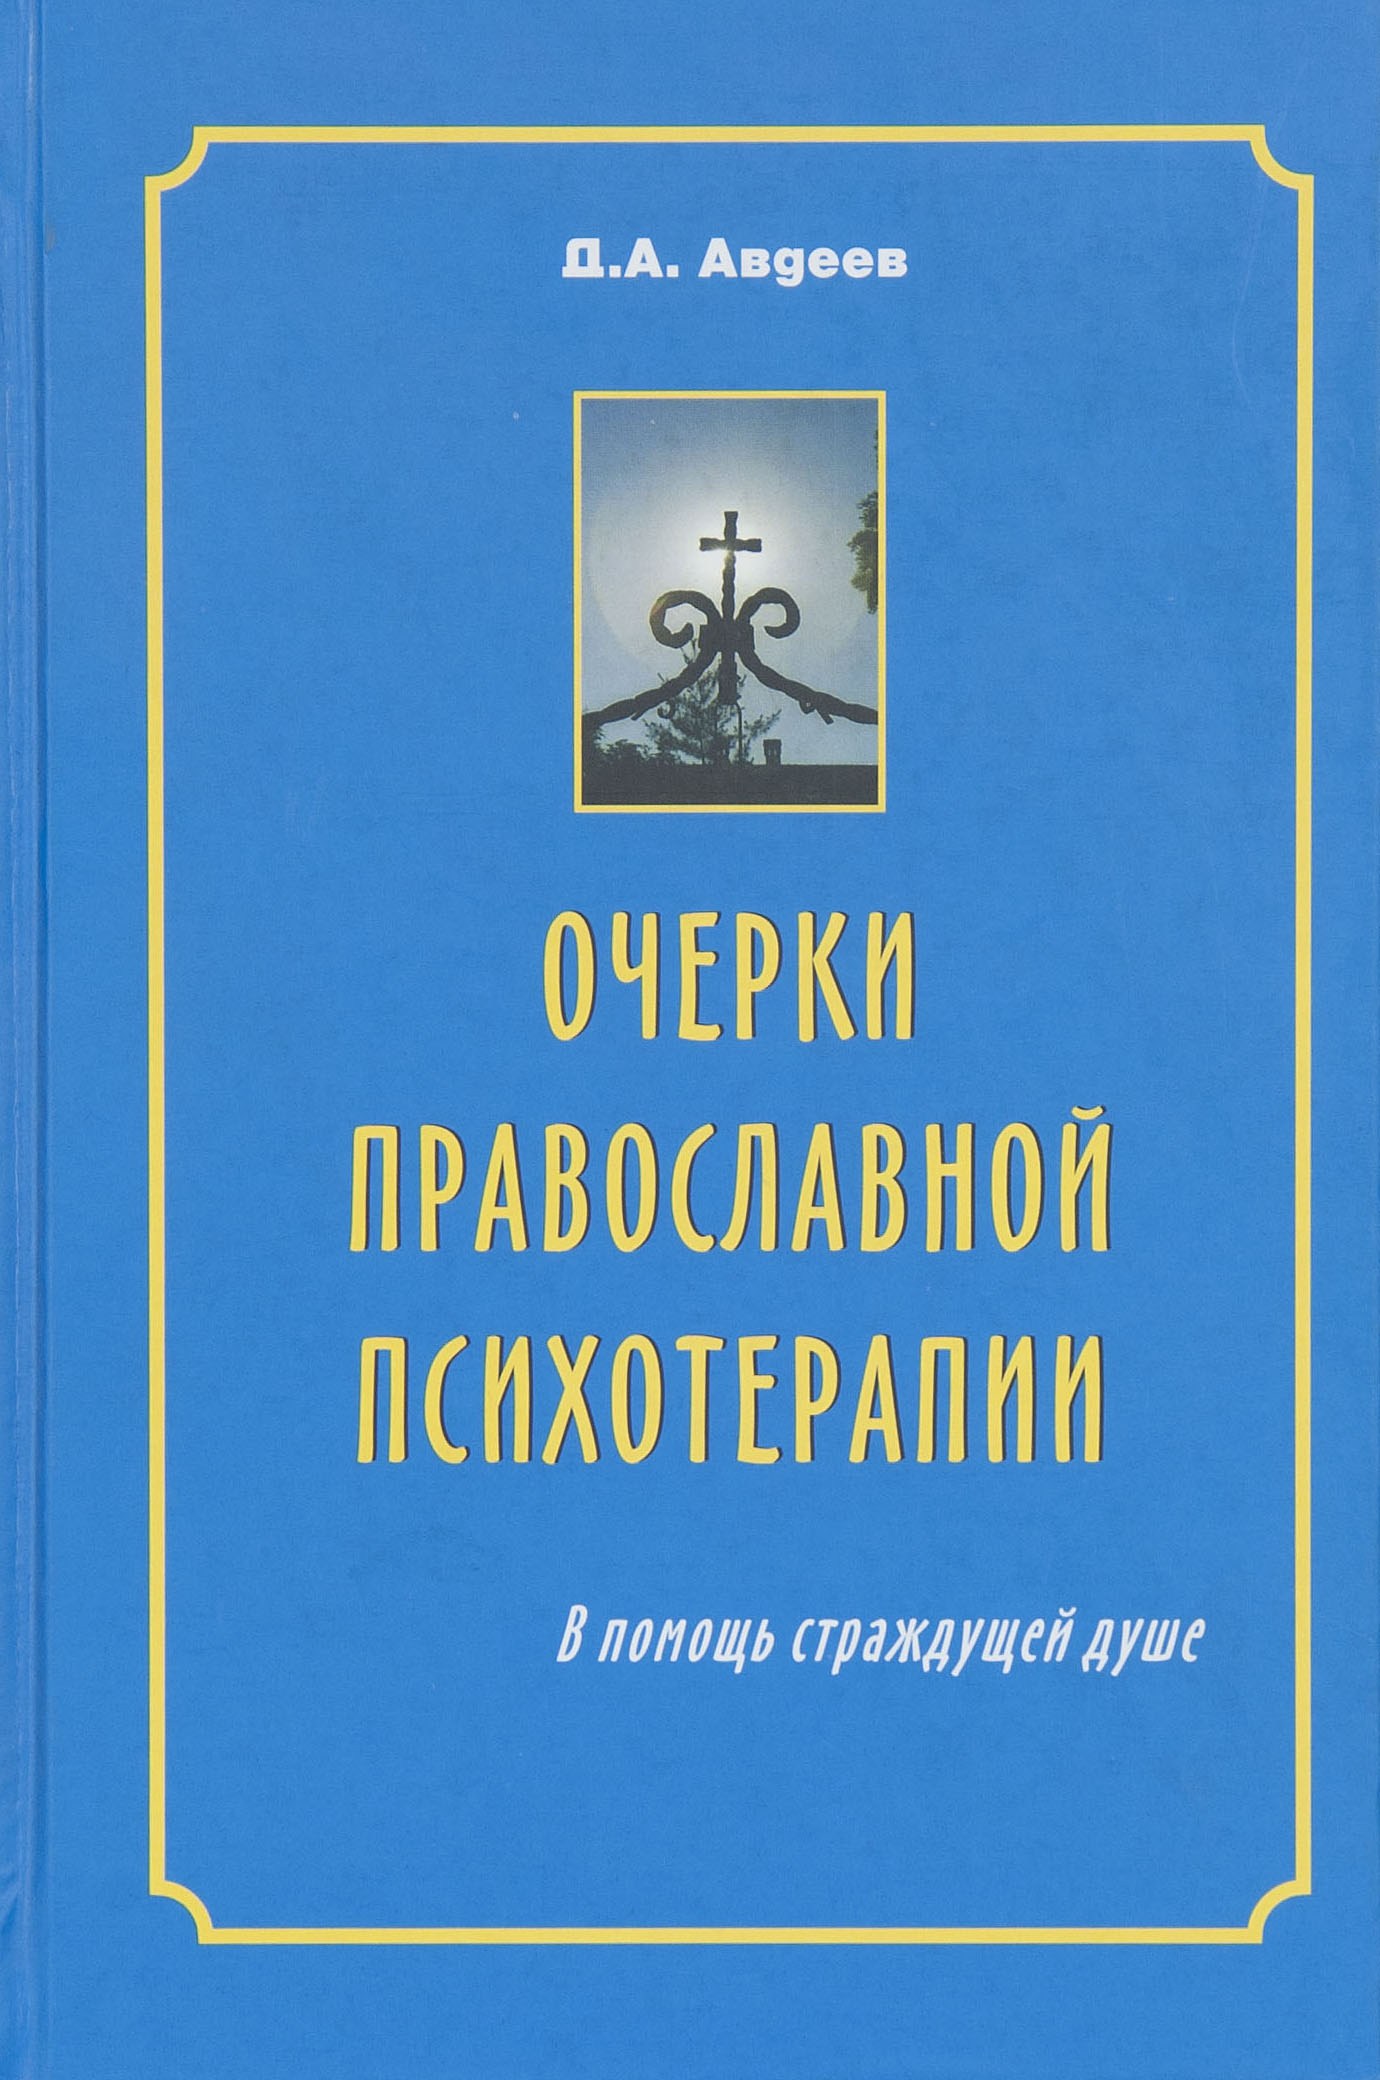 Обложка книги "Православная психотерапия"